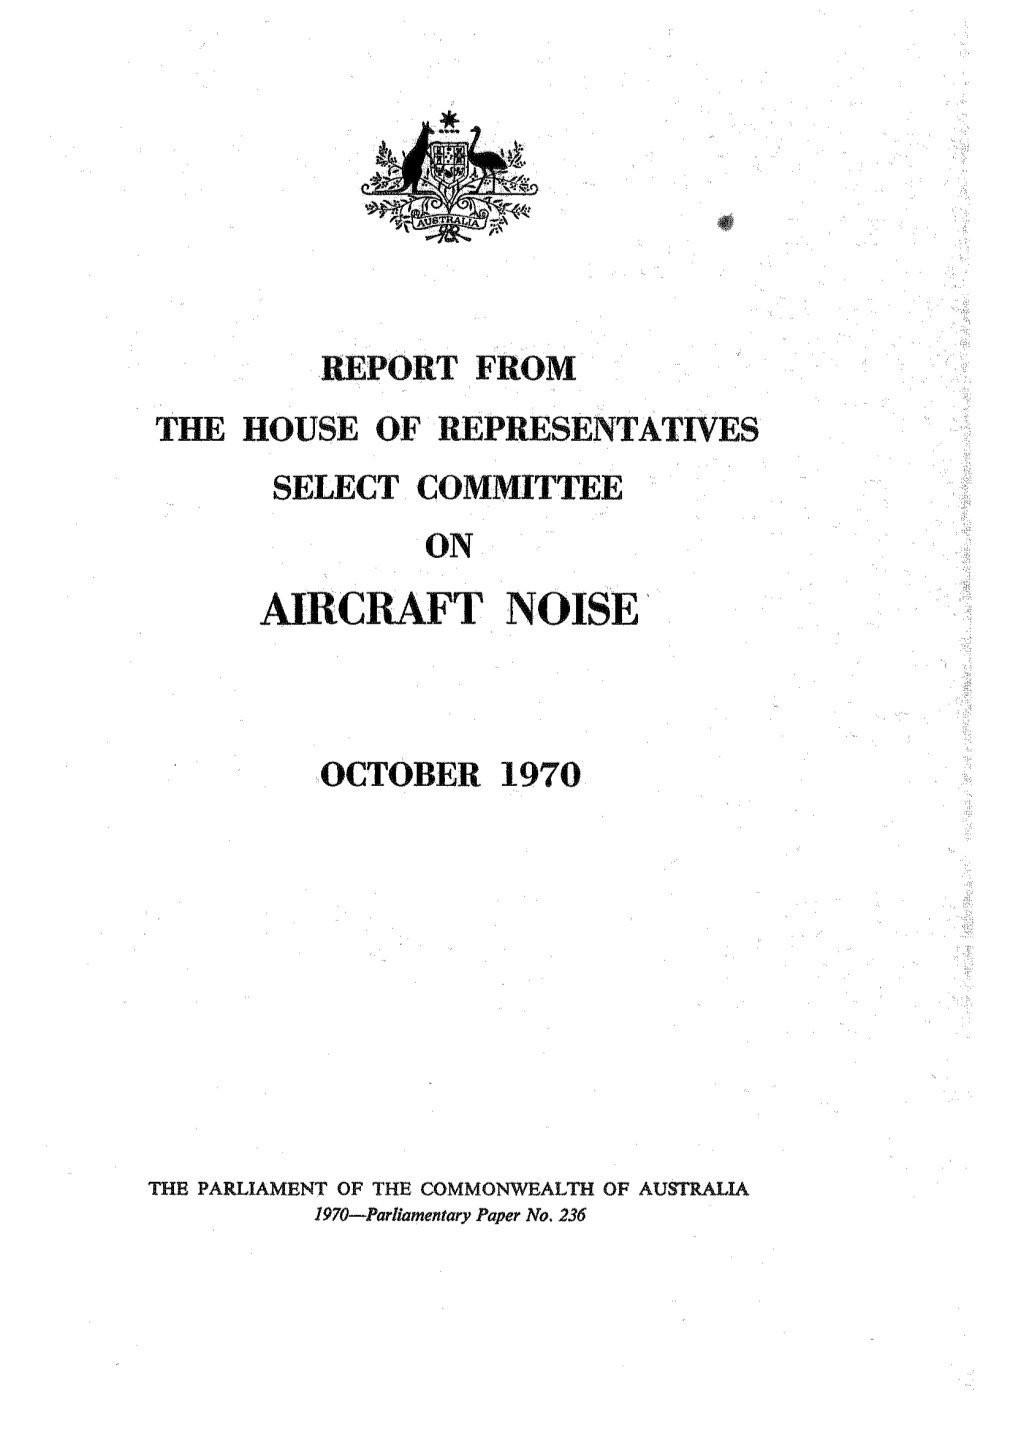 1970—Parliamentary Paper No. 236 1970—Parliamentary Paper No